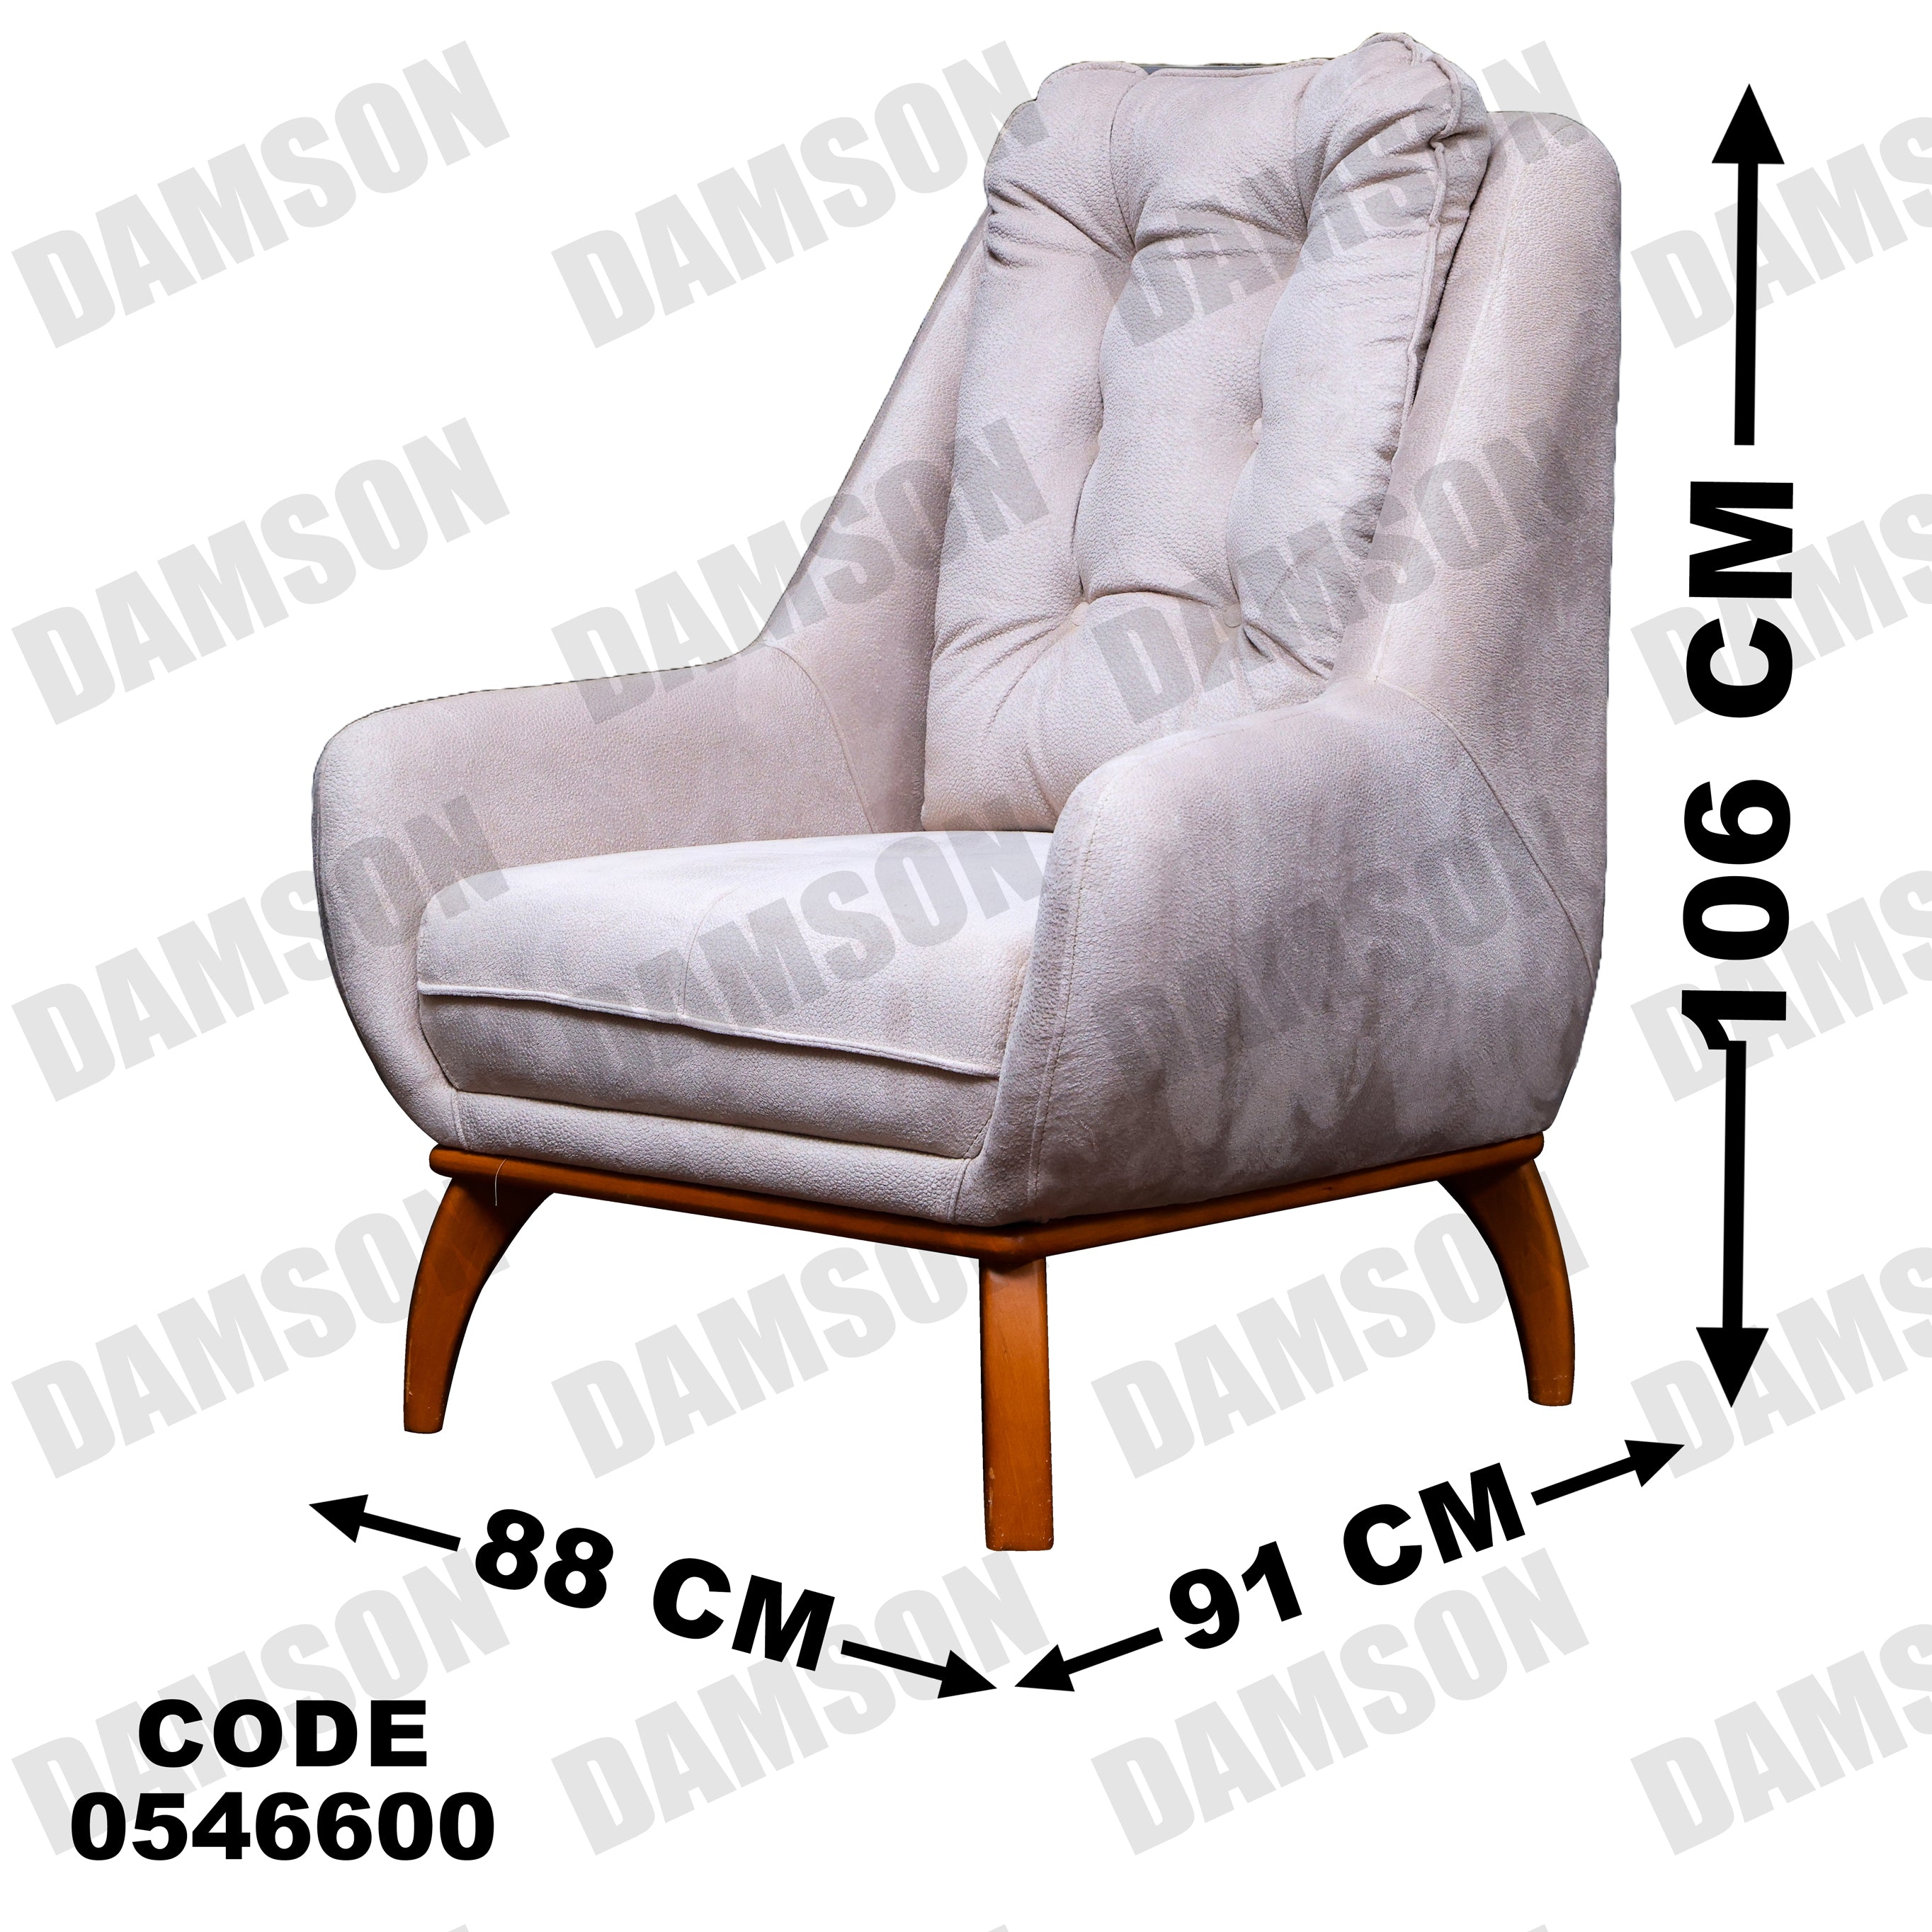 فوتية 2-466 - Damson Furnitureفوتية 2-466